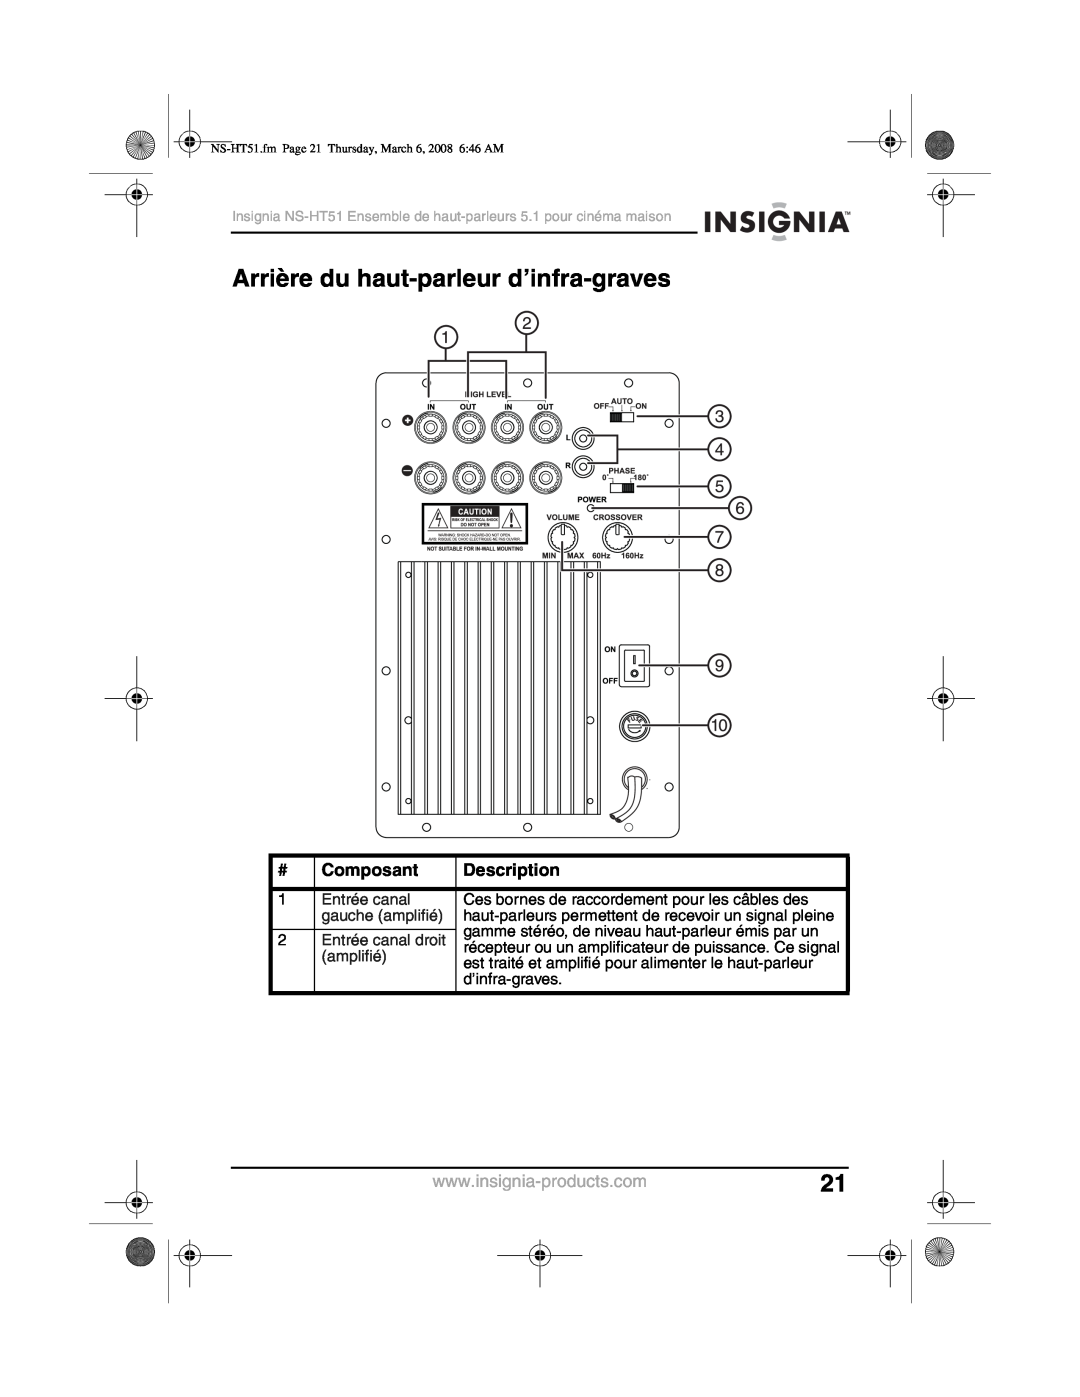 Insignia NS-HT51 manual Arrière du haut-parleur d’infra-graves, Composant, Description 